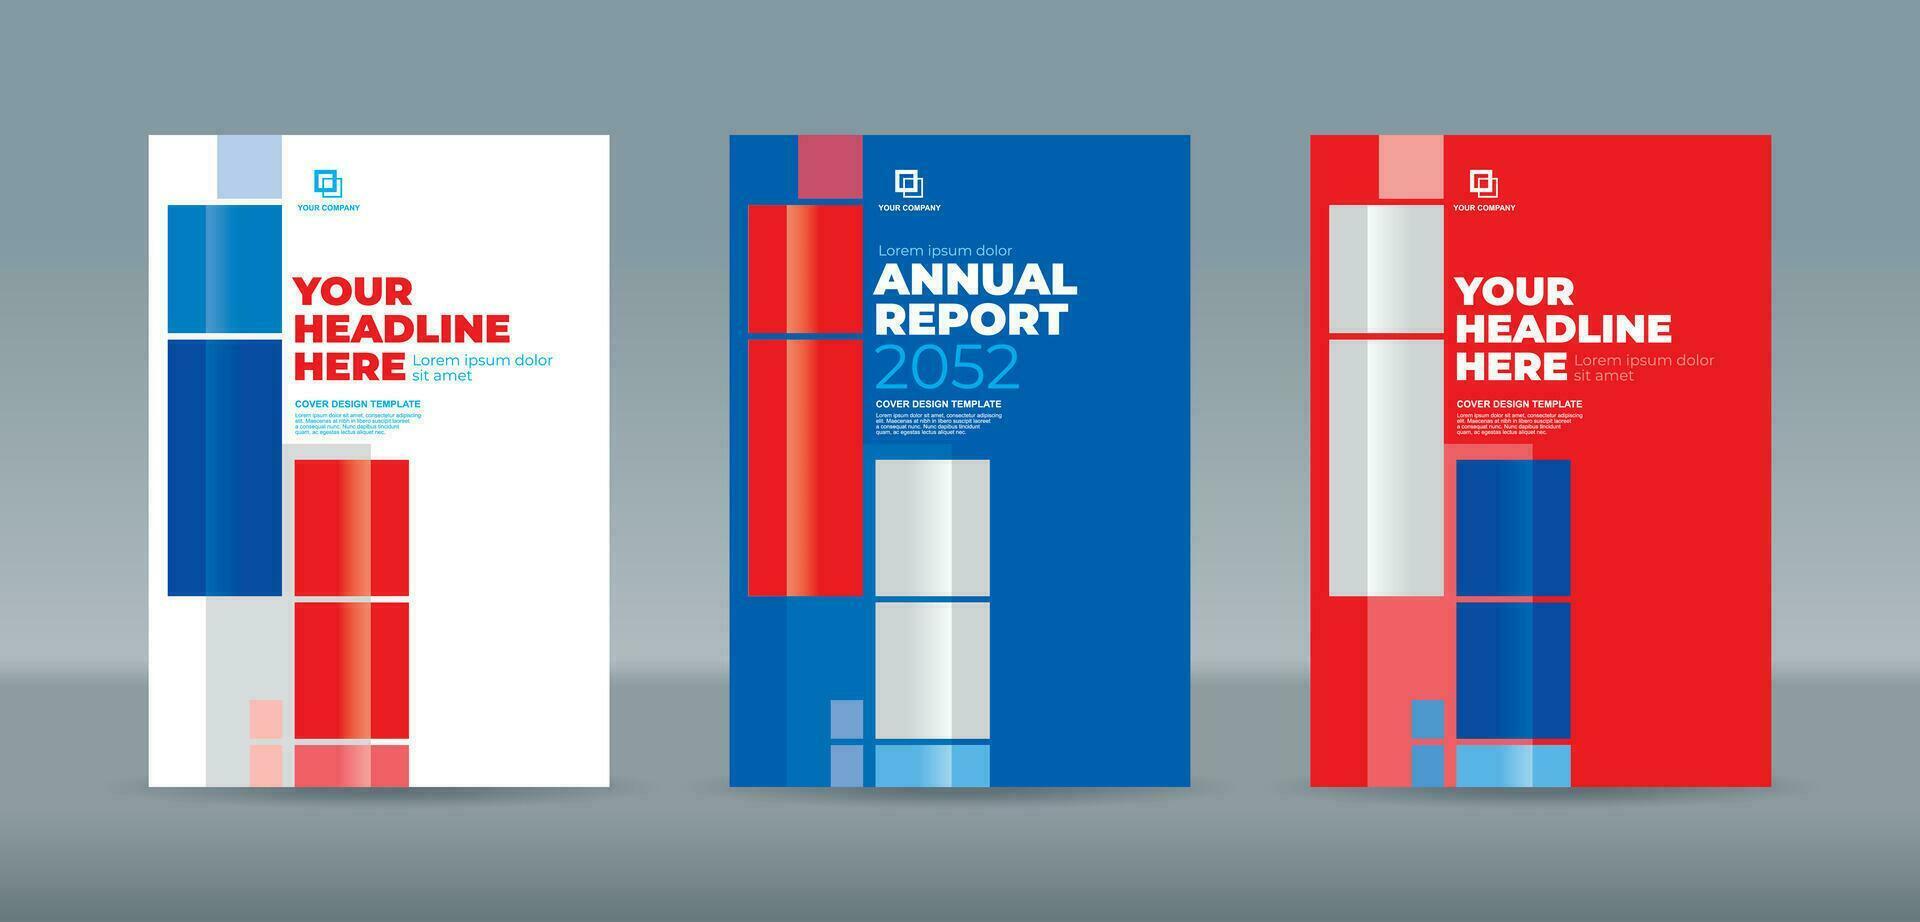 abstrakt slumpmässig transparent rektangel med vit, blå och röd bakgrund. a4 storlek bok omslag mall för årlig Rapportera, tidskrift, häfte, förslag, portfölj, broschyr, affisch vektor